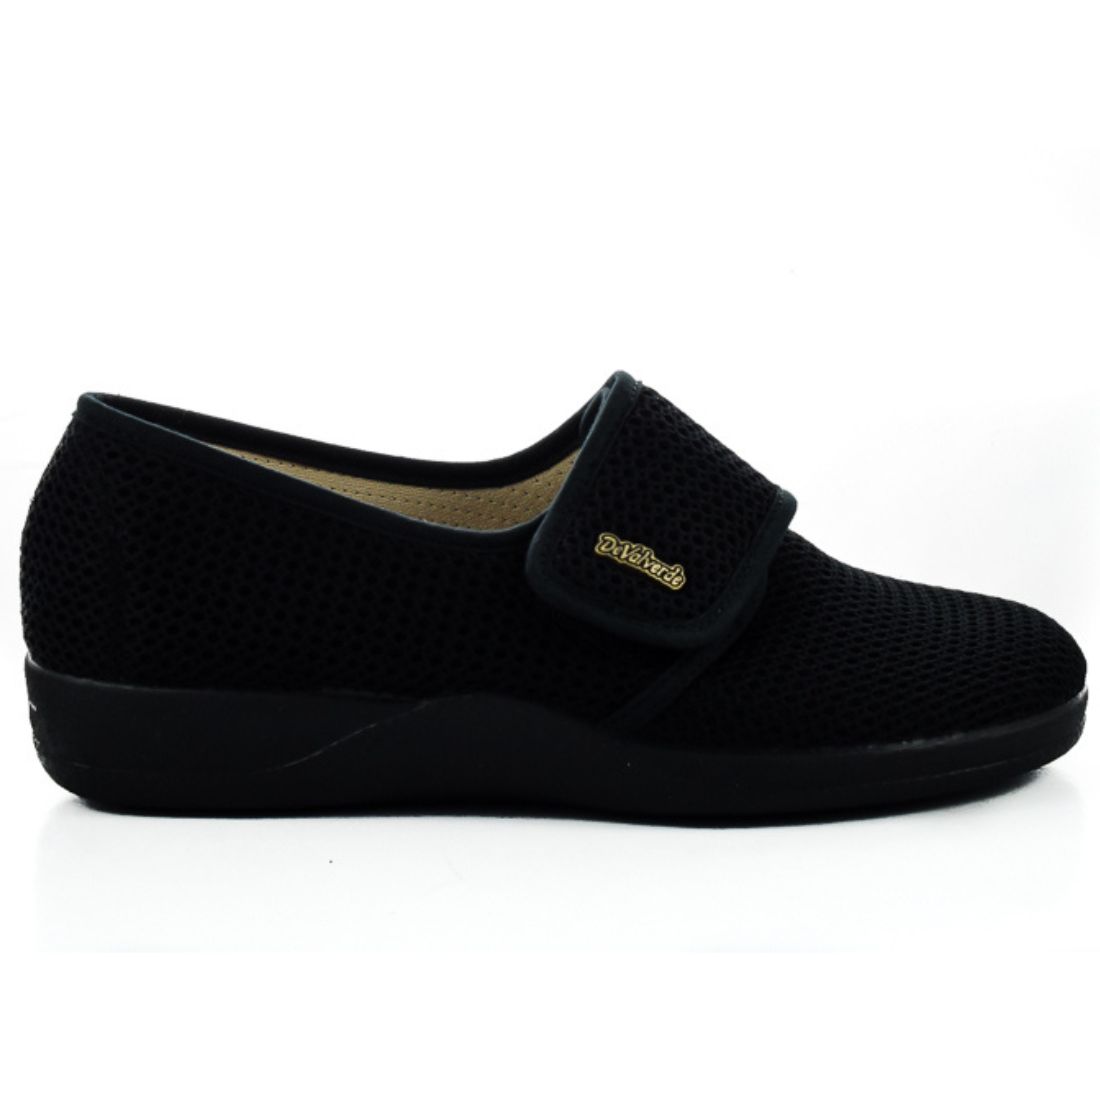 Γυναικεία Παπούτσια Υφασμάτινα | DeValverde | 511160 | Μαύρο